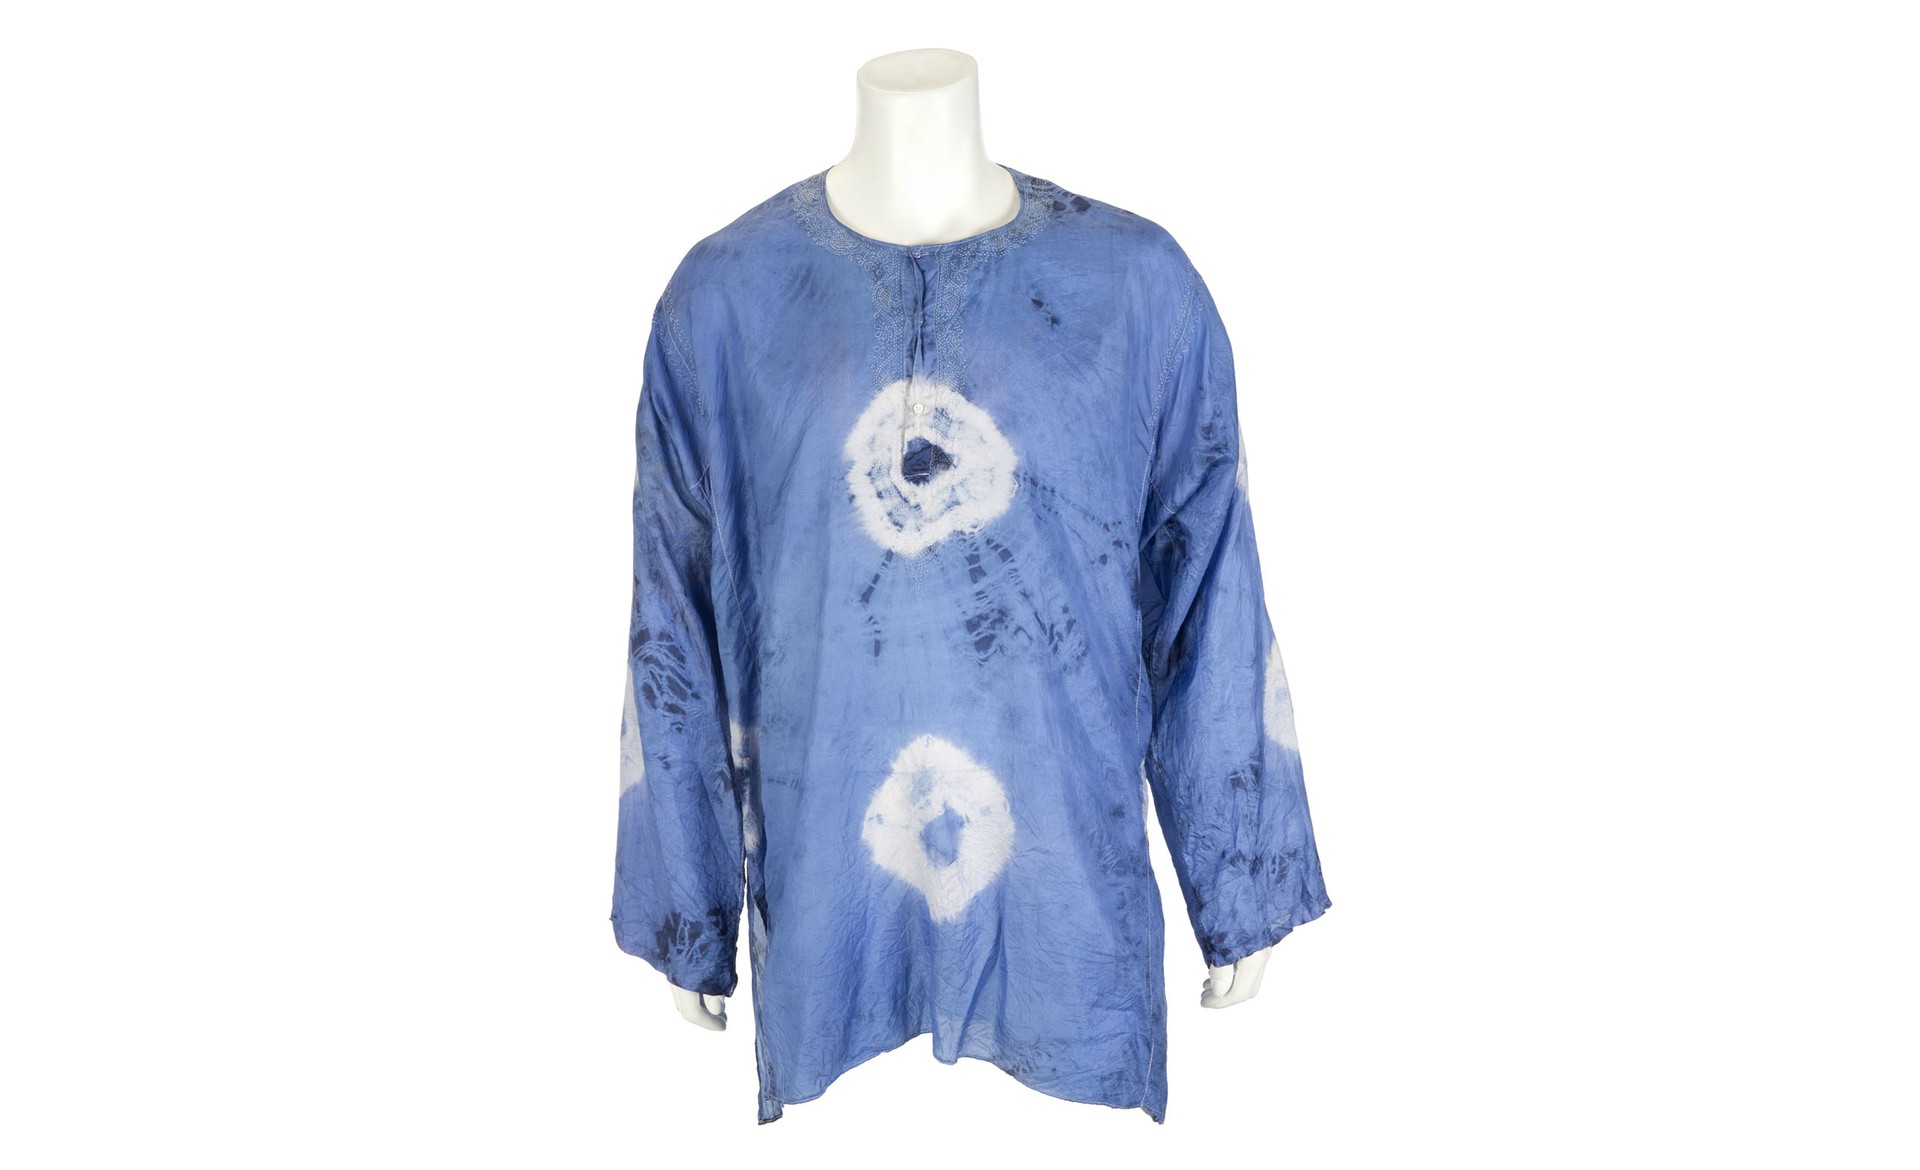 Até um camisetão hippie está à venda, com preço estimado entre 100 e 200 dólares (225 e 450 reais). (Foto: Reprodução)